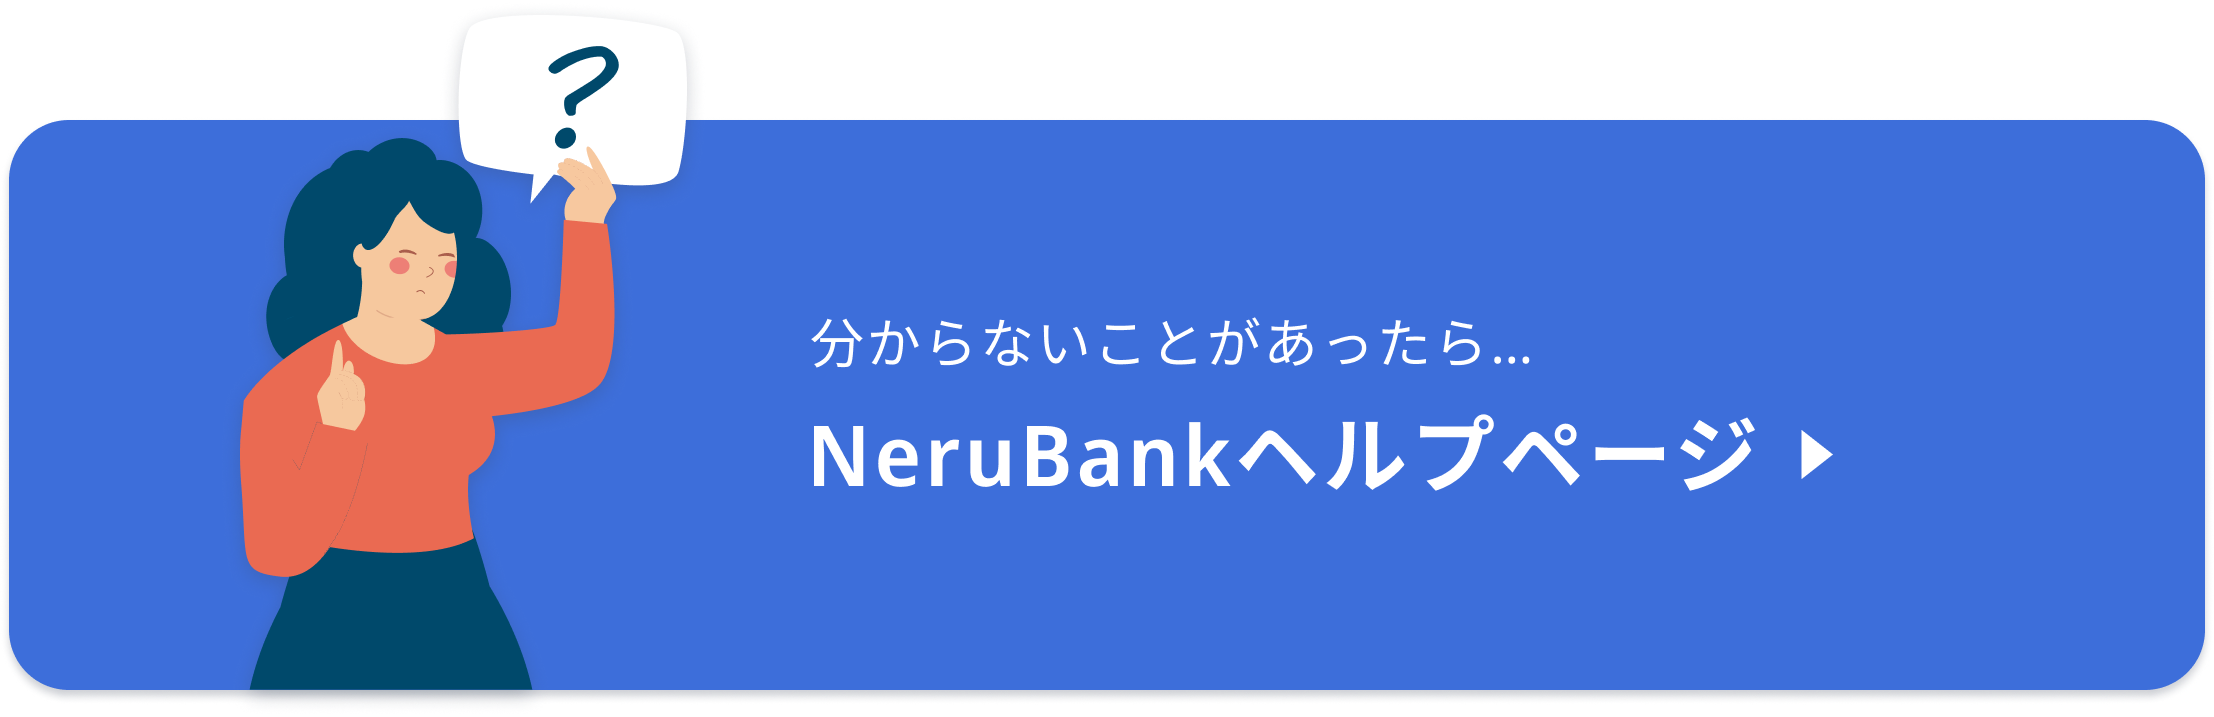 分からないことがあったら、NeruBankヘルプページ